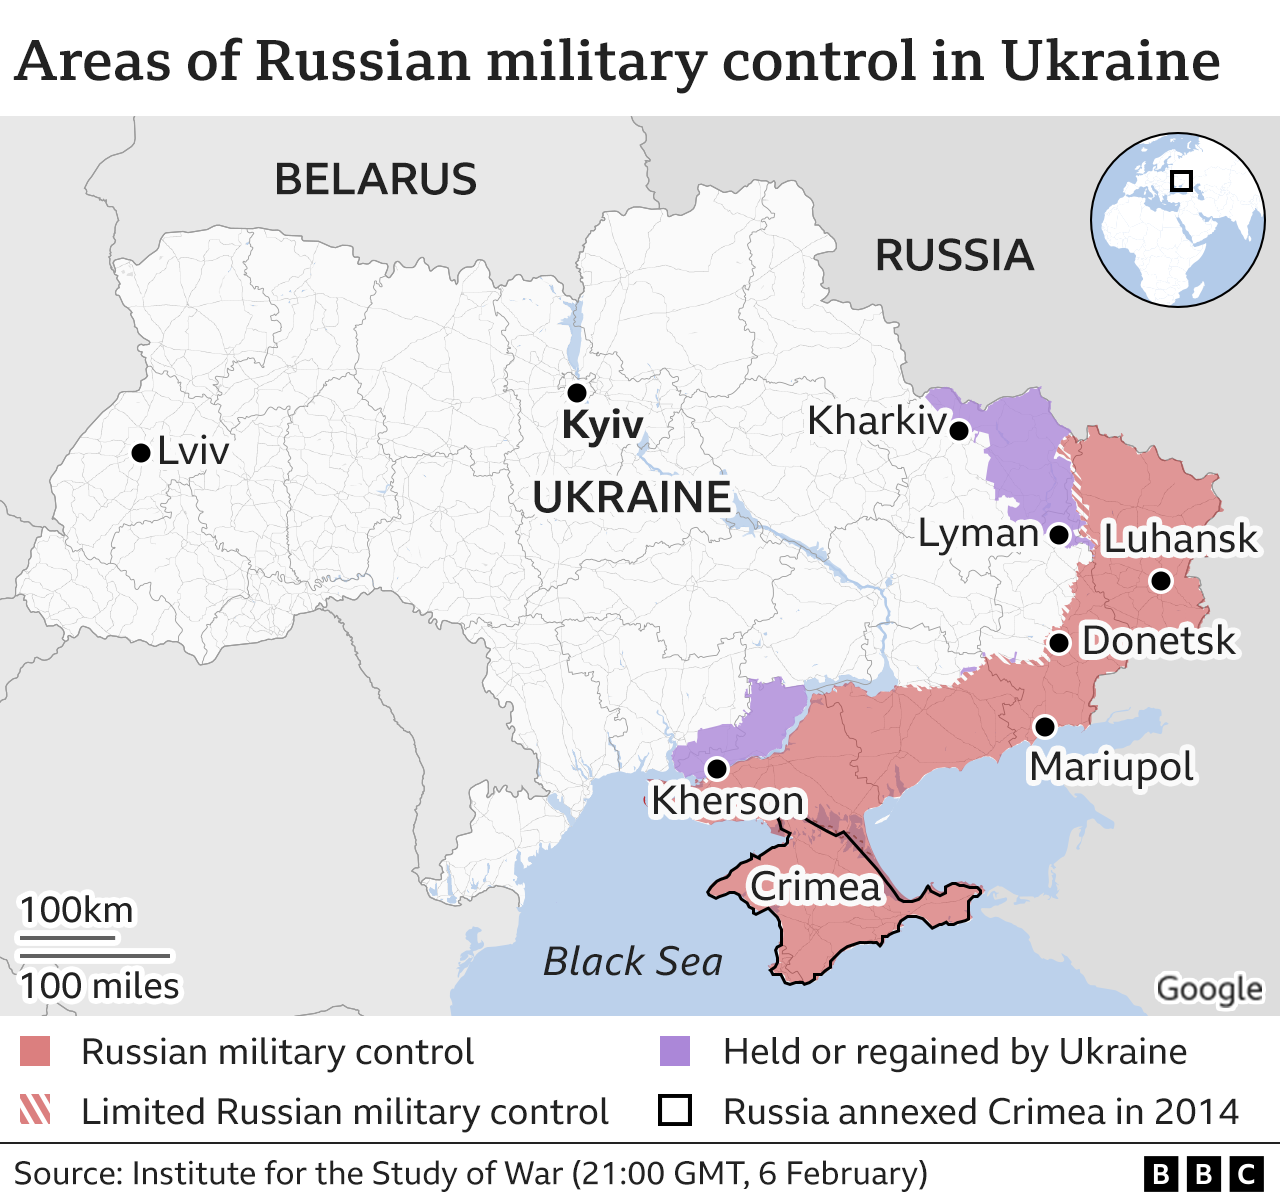 แผนที่ BBC แสดงการควบคุมโดยรวมของยูเครน  เคียฟยังคงปกครองพื้นที่ส่วนใหญ่ของประเทศ โดยมีรัสเซียควบคุมทางตะวันออกและใต้